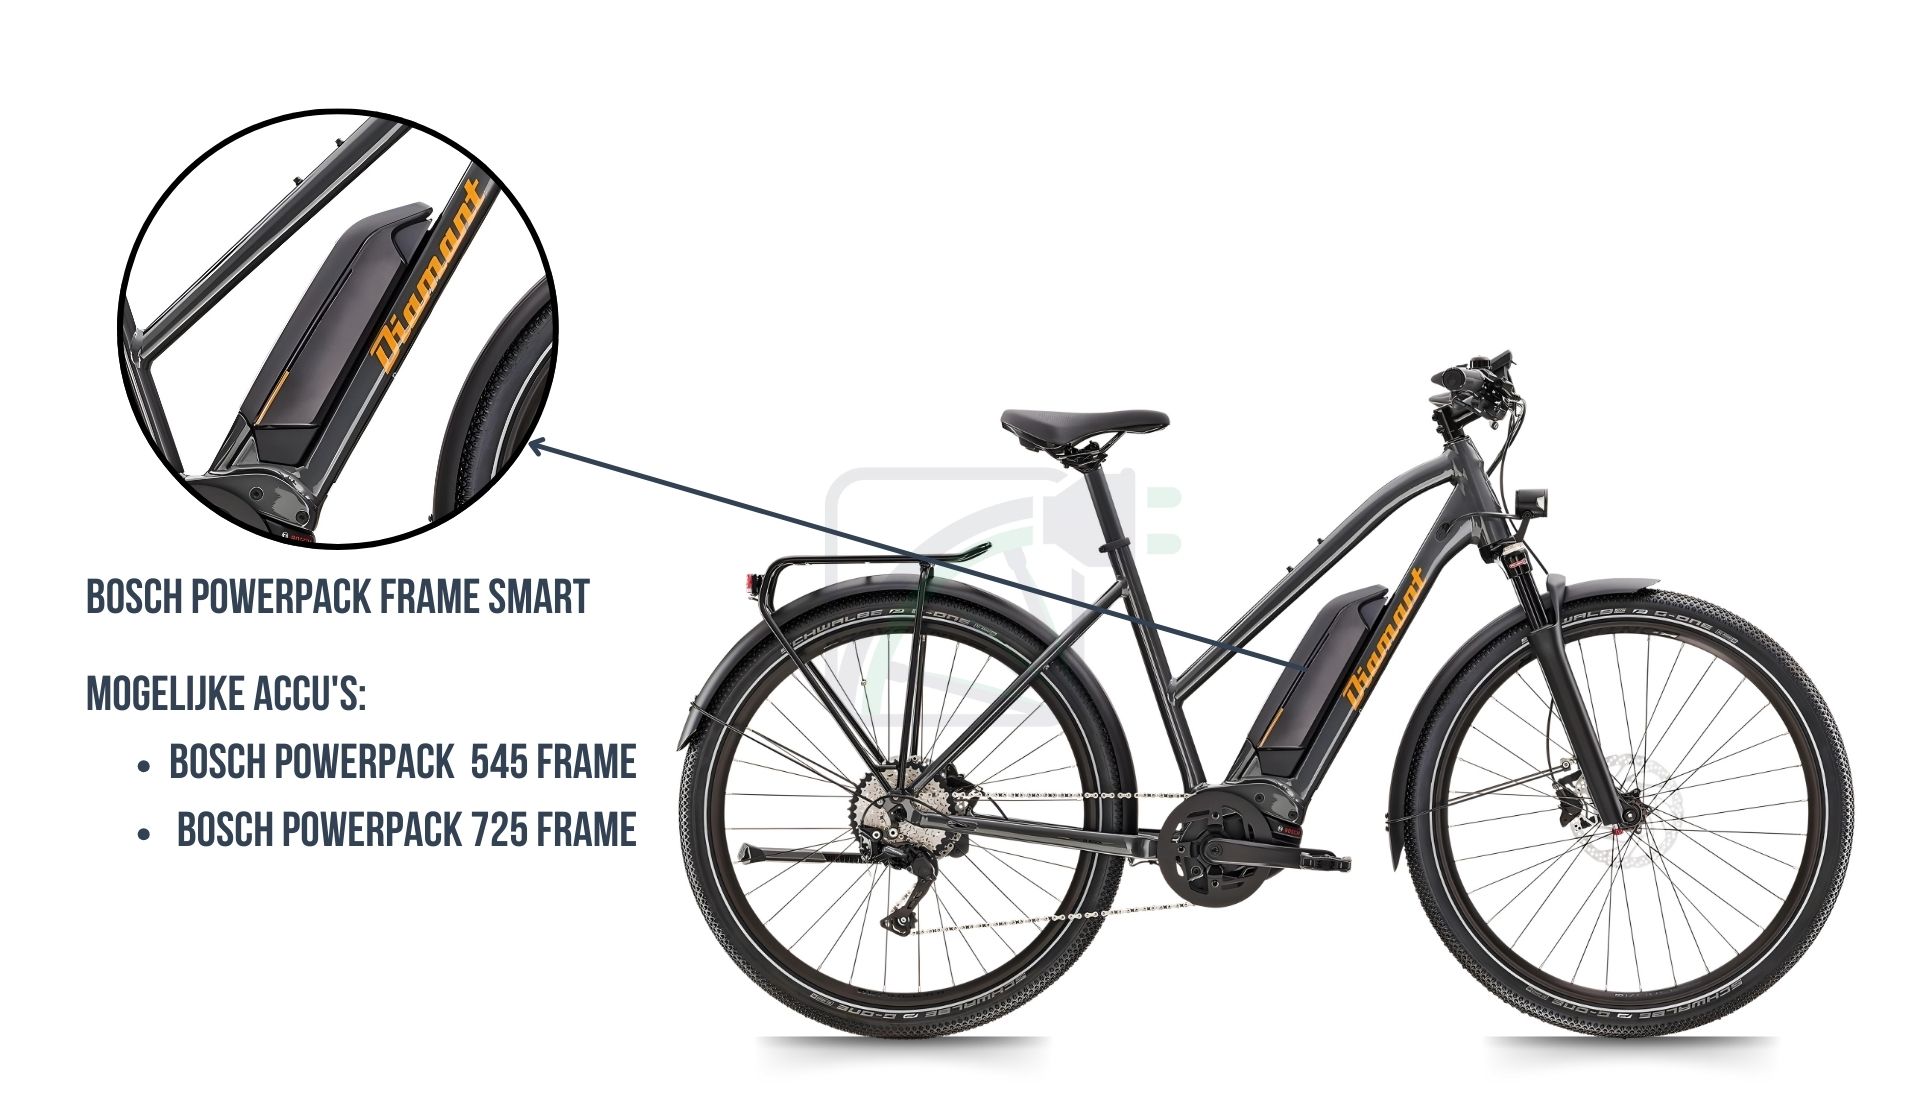 In questa immagine vedi la bicicletta elettrica Diamant Mandara. Qui viene messo in evidenza quale batteria è presente in questa bicicletta. Si tratta della batteria Bosch Powerpack 545 / 725 SMART frame.